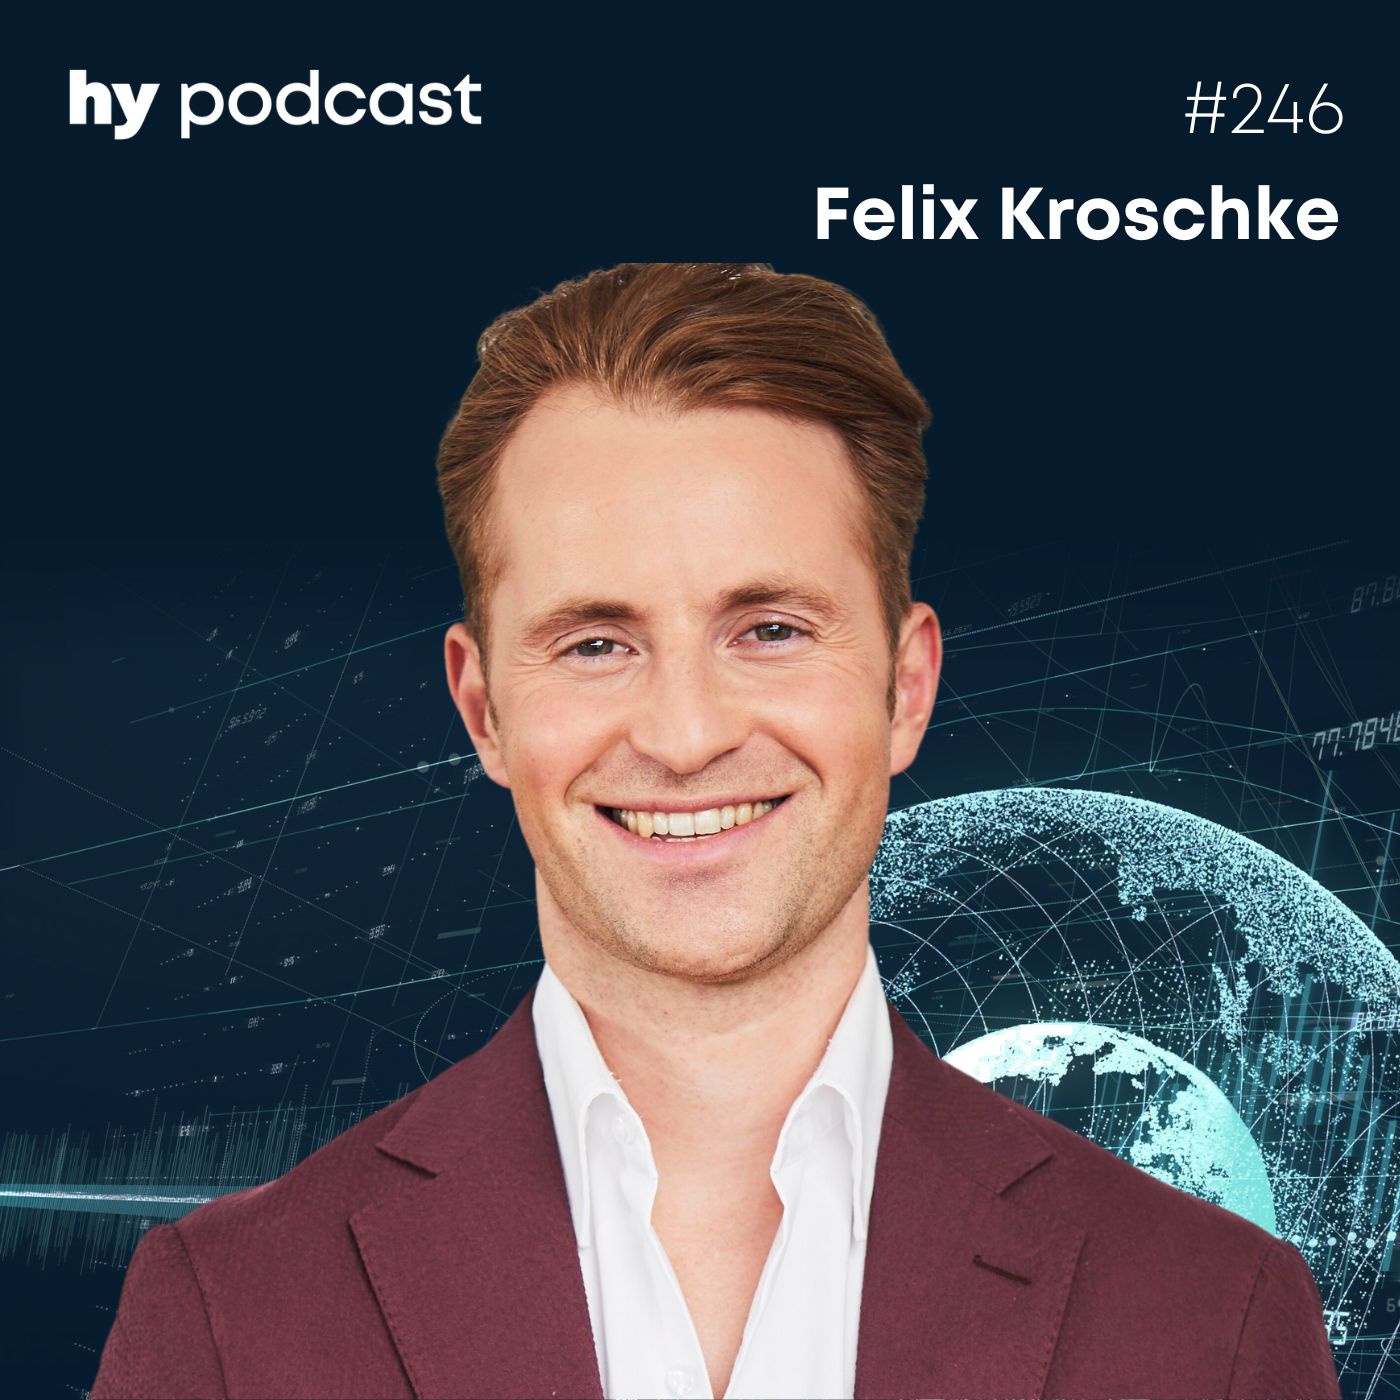 Folge 246 mit Felix Kroschke: Warum die digitale Autozulassung so langsam vorankommt